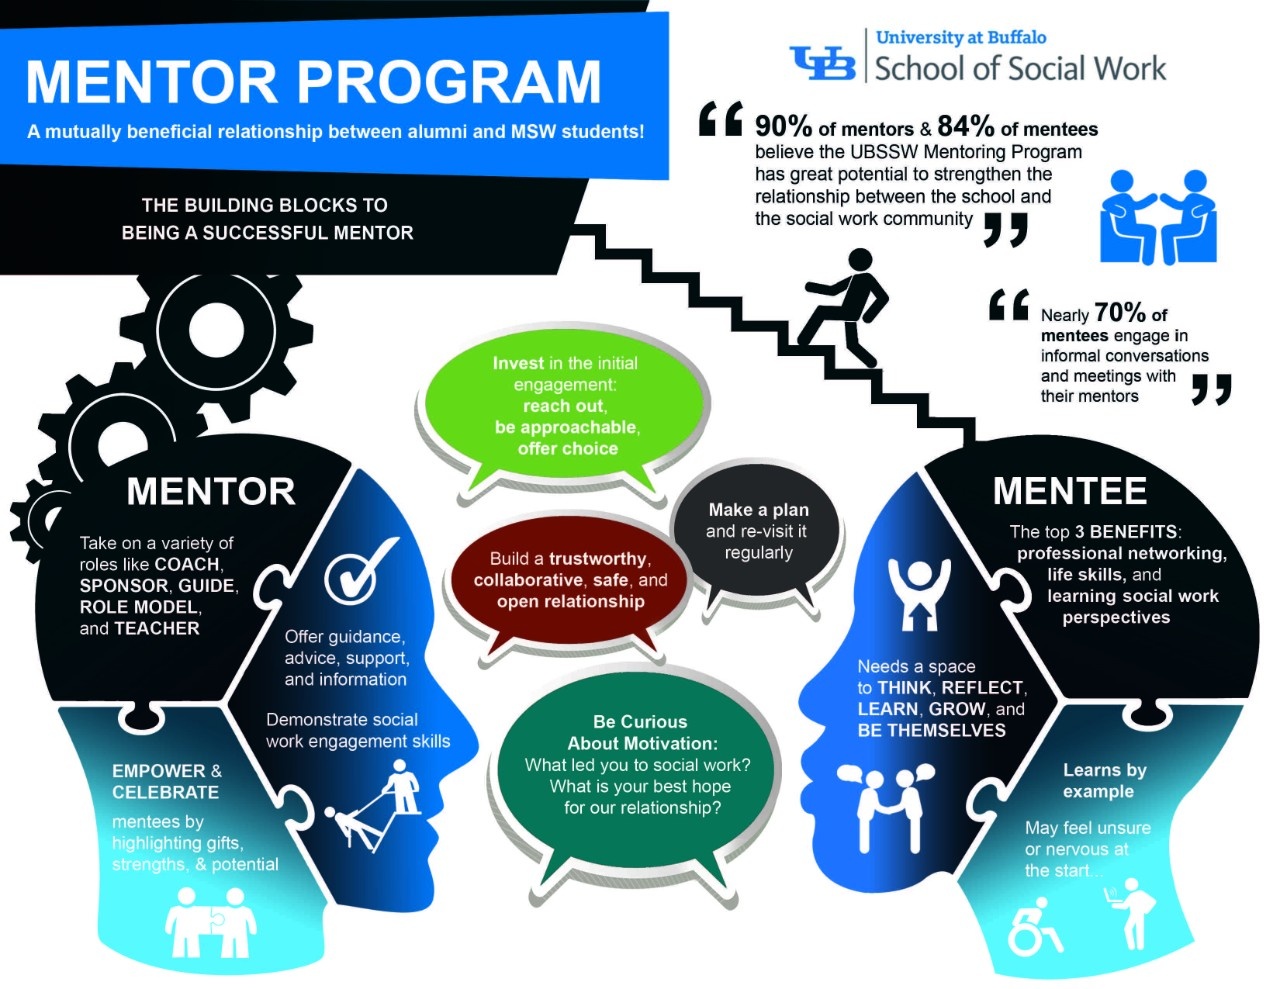 Mentor Program University at Buffalo School of Social Work - University at Buffalo